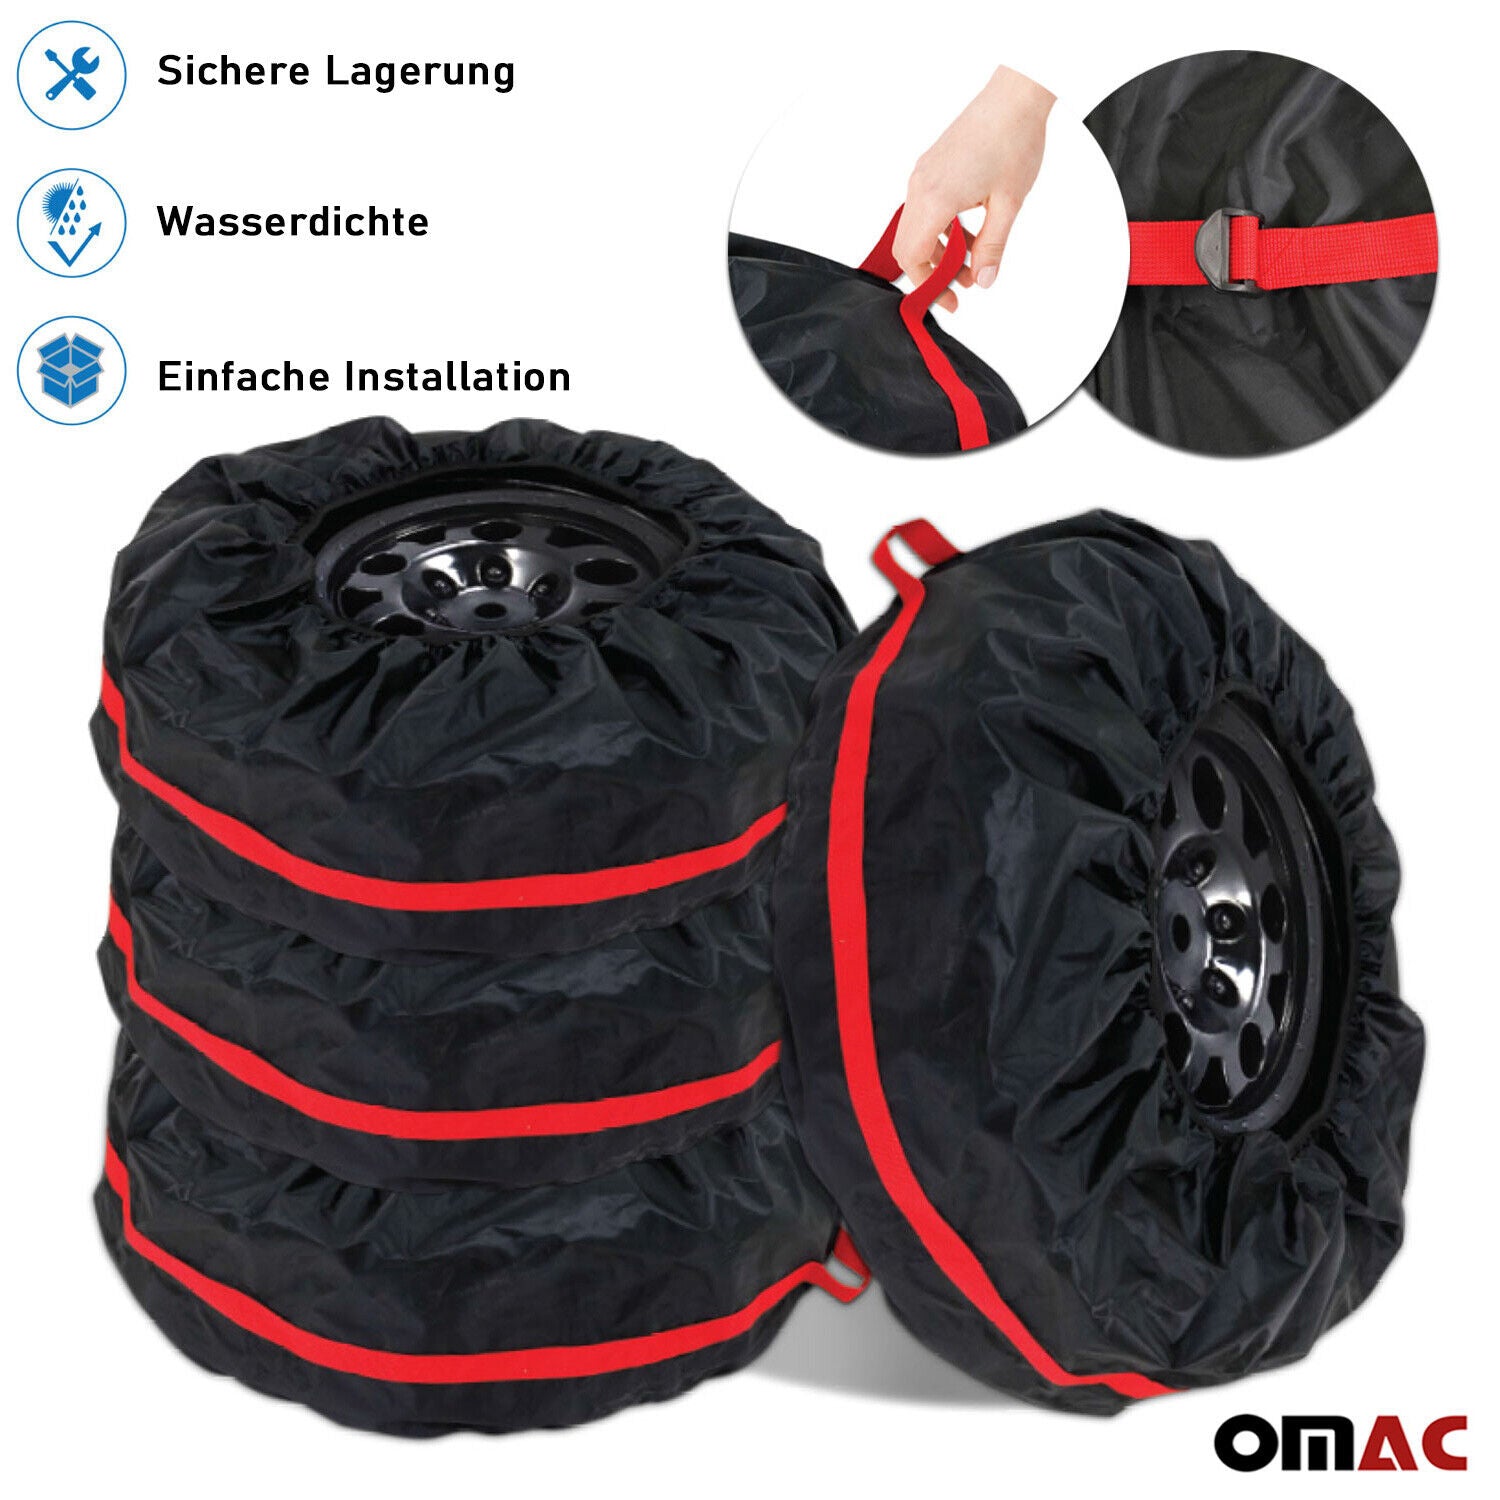 Reifentasche, schwarz, für 4 Kartreifen mit oder ohne Felge